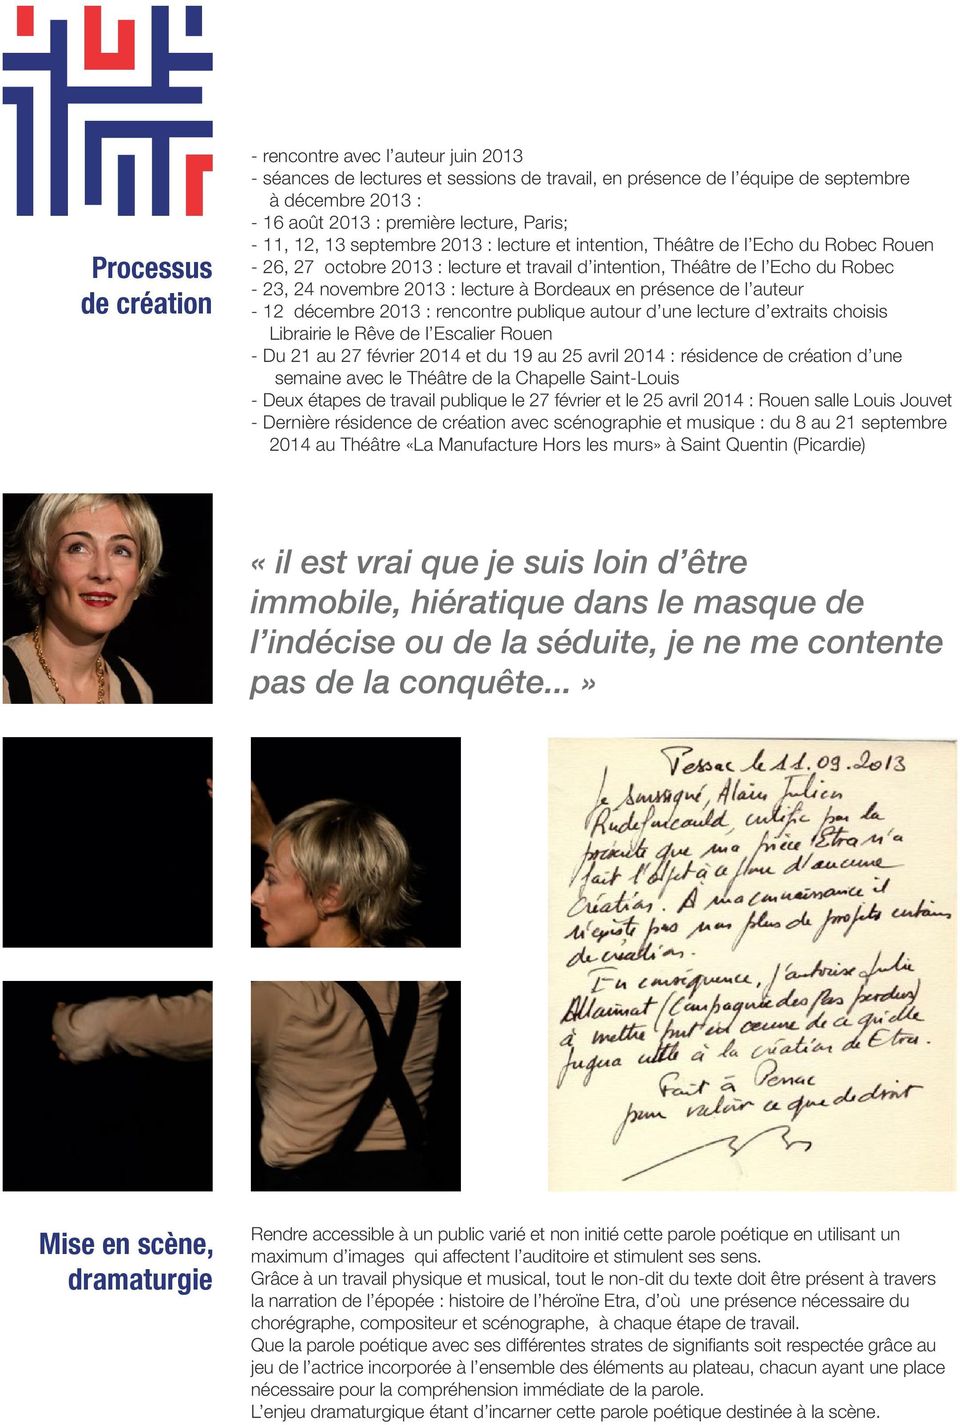 lecture à Bordeaux en présence de l auteur - 12 décembre 2013 : rencontre publique autour d une lecture d extraits choisis Librairie le Rêve de l Escalier Rouen - Du 21 au 27 février 2014 et du 19 au